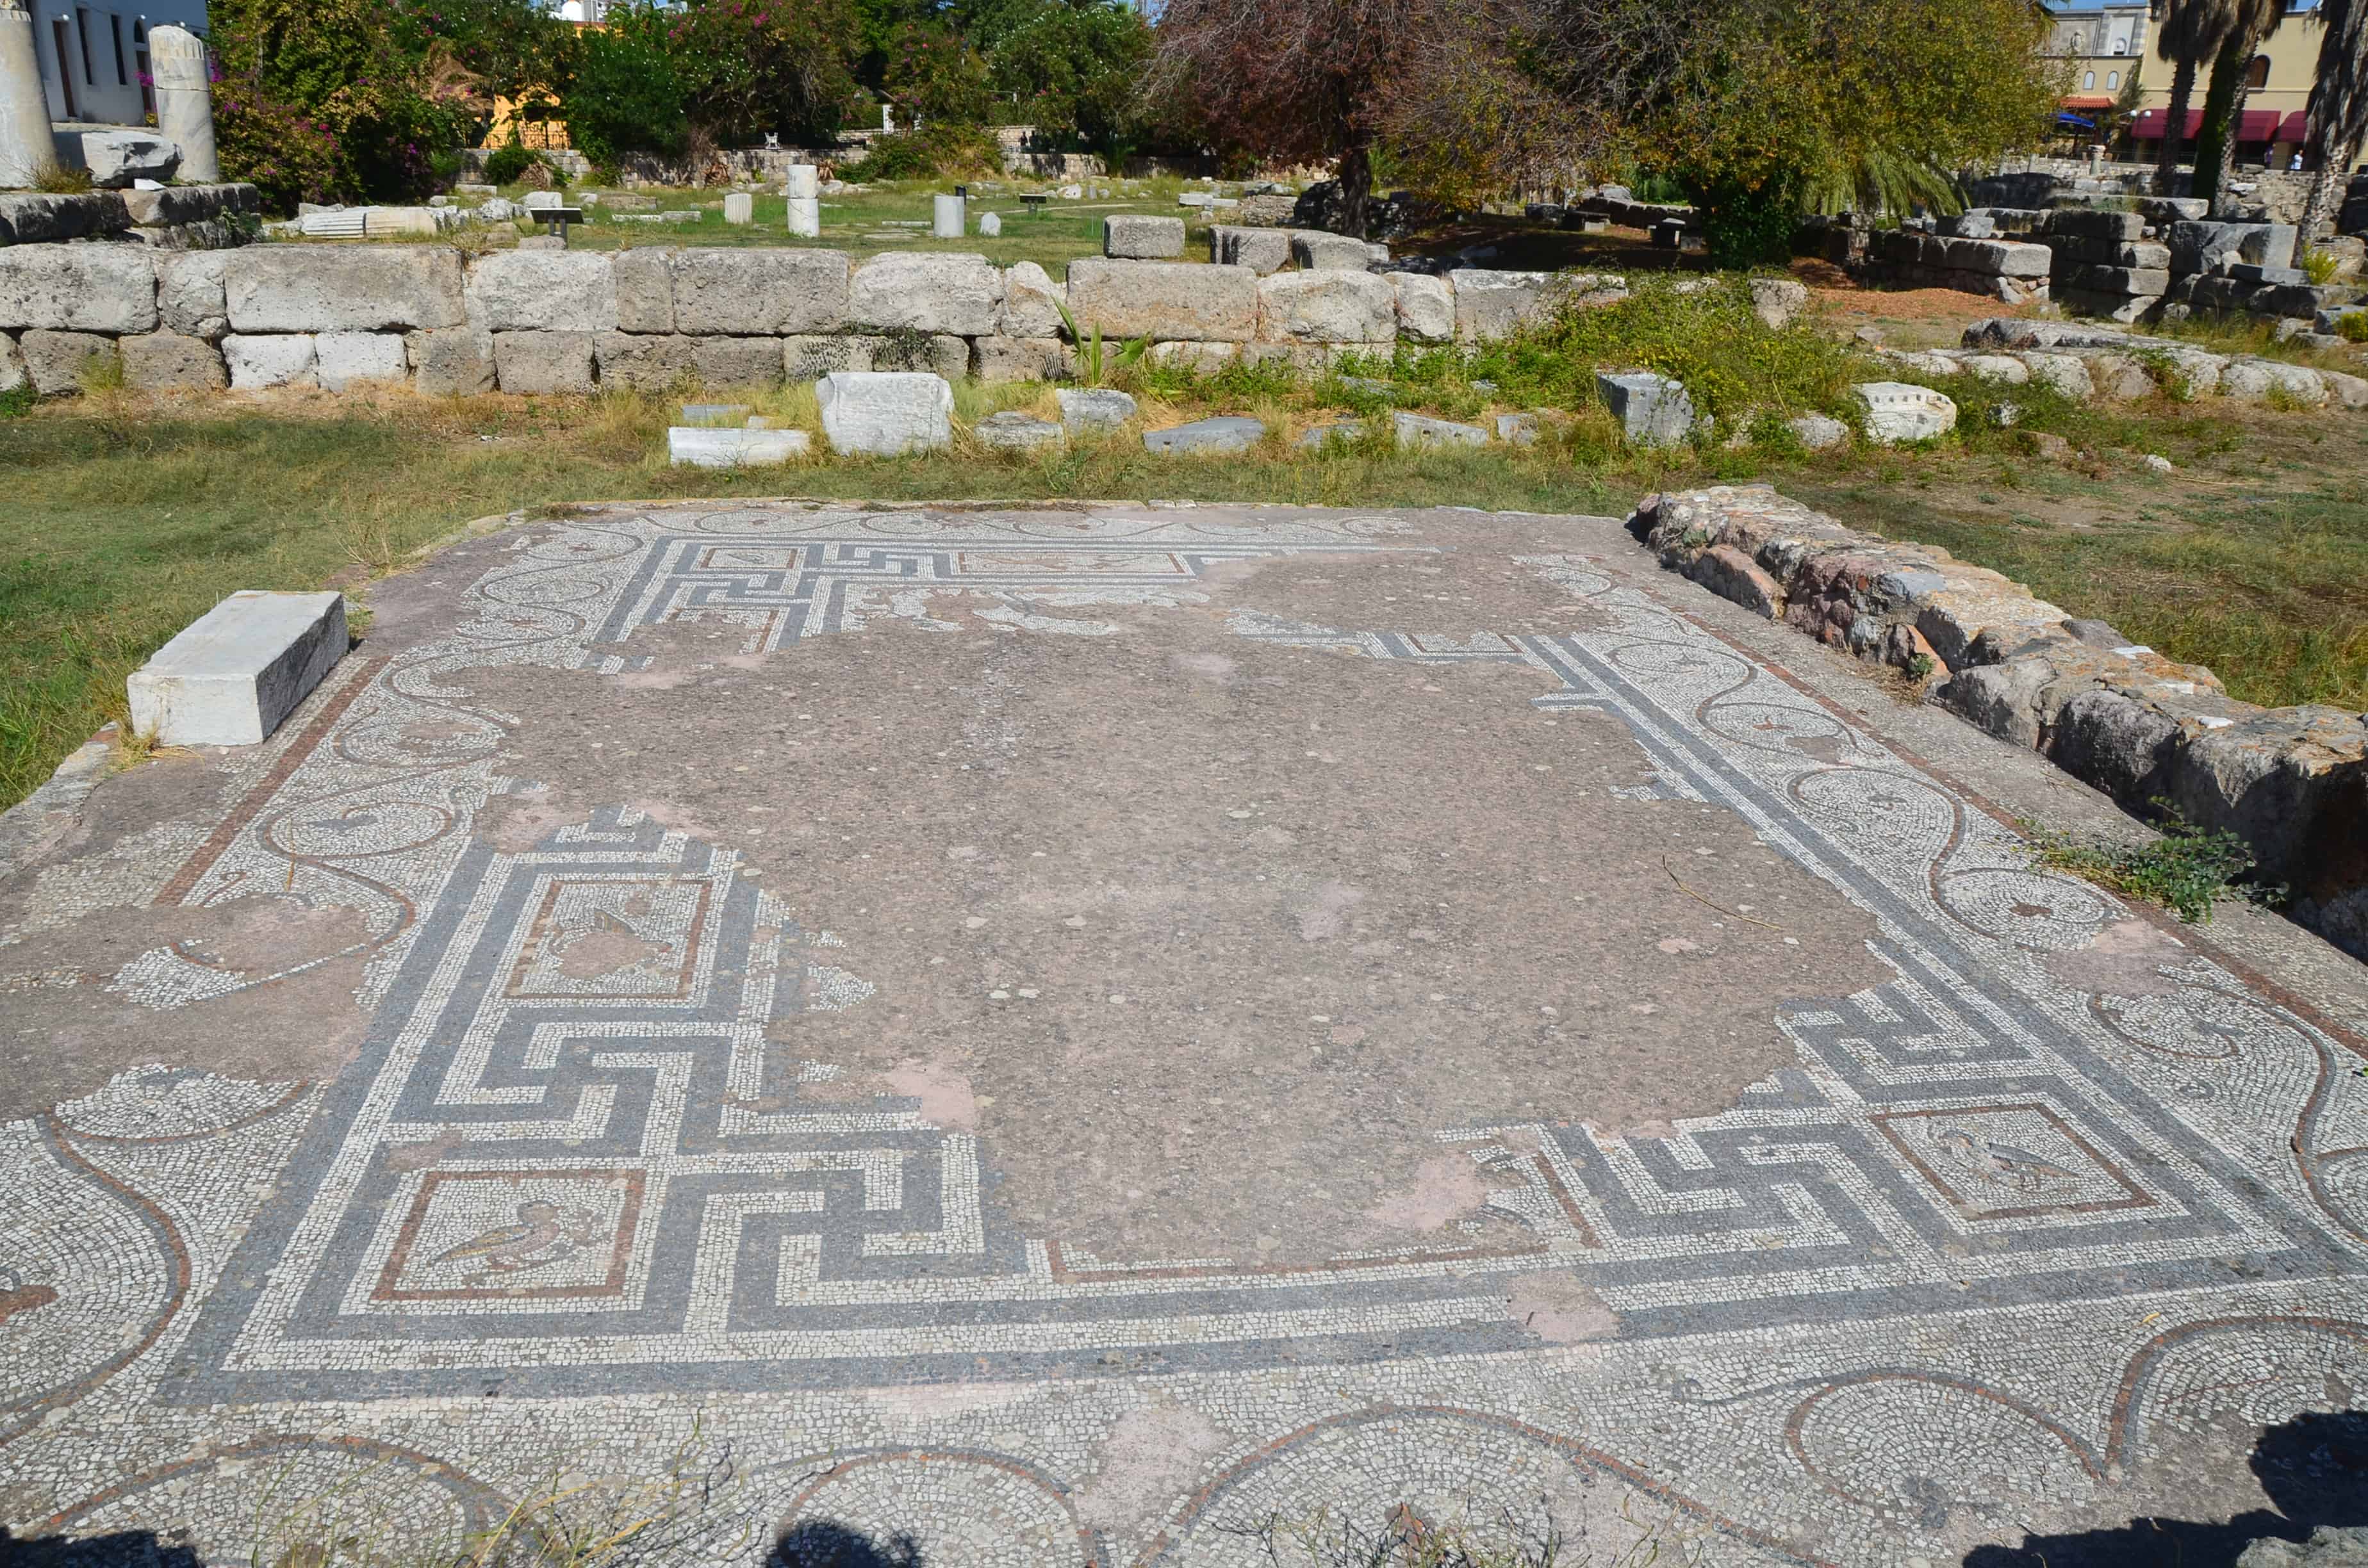 Mosaic at the Agora in Kos, Greece